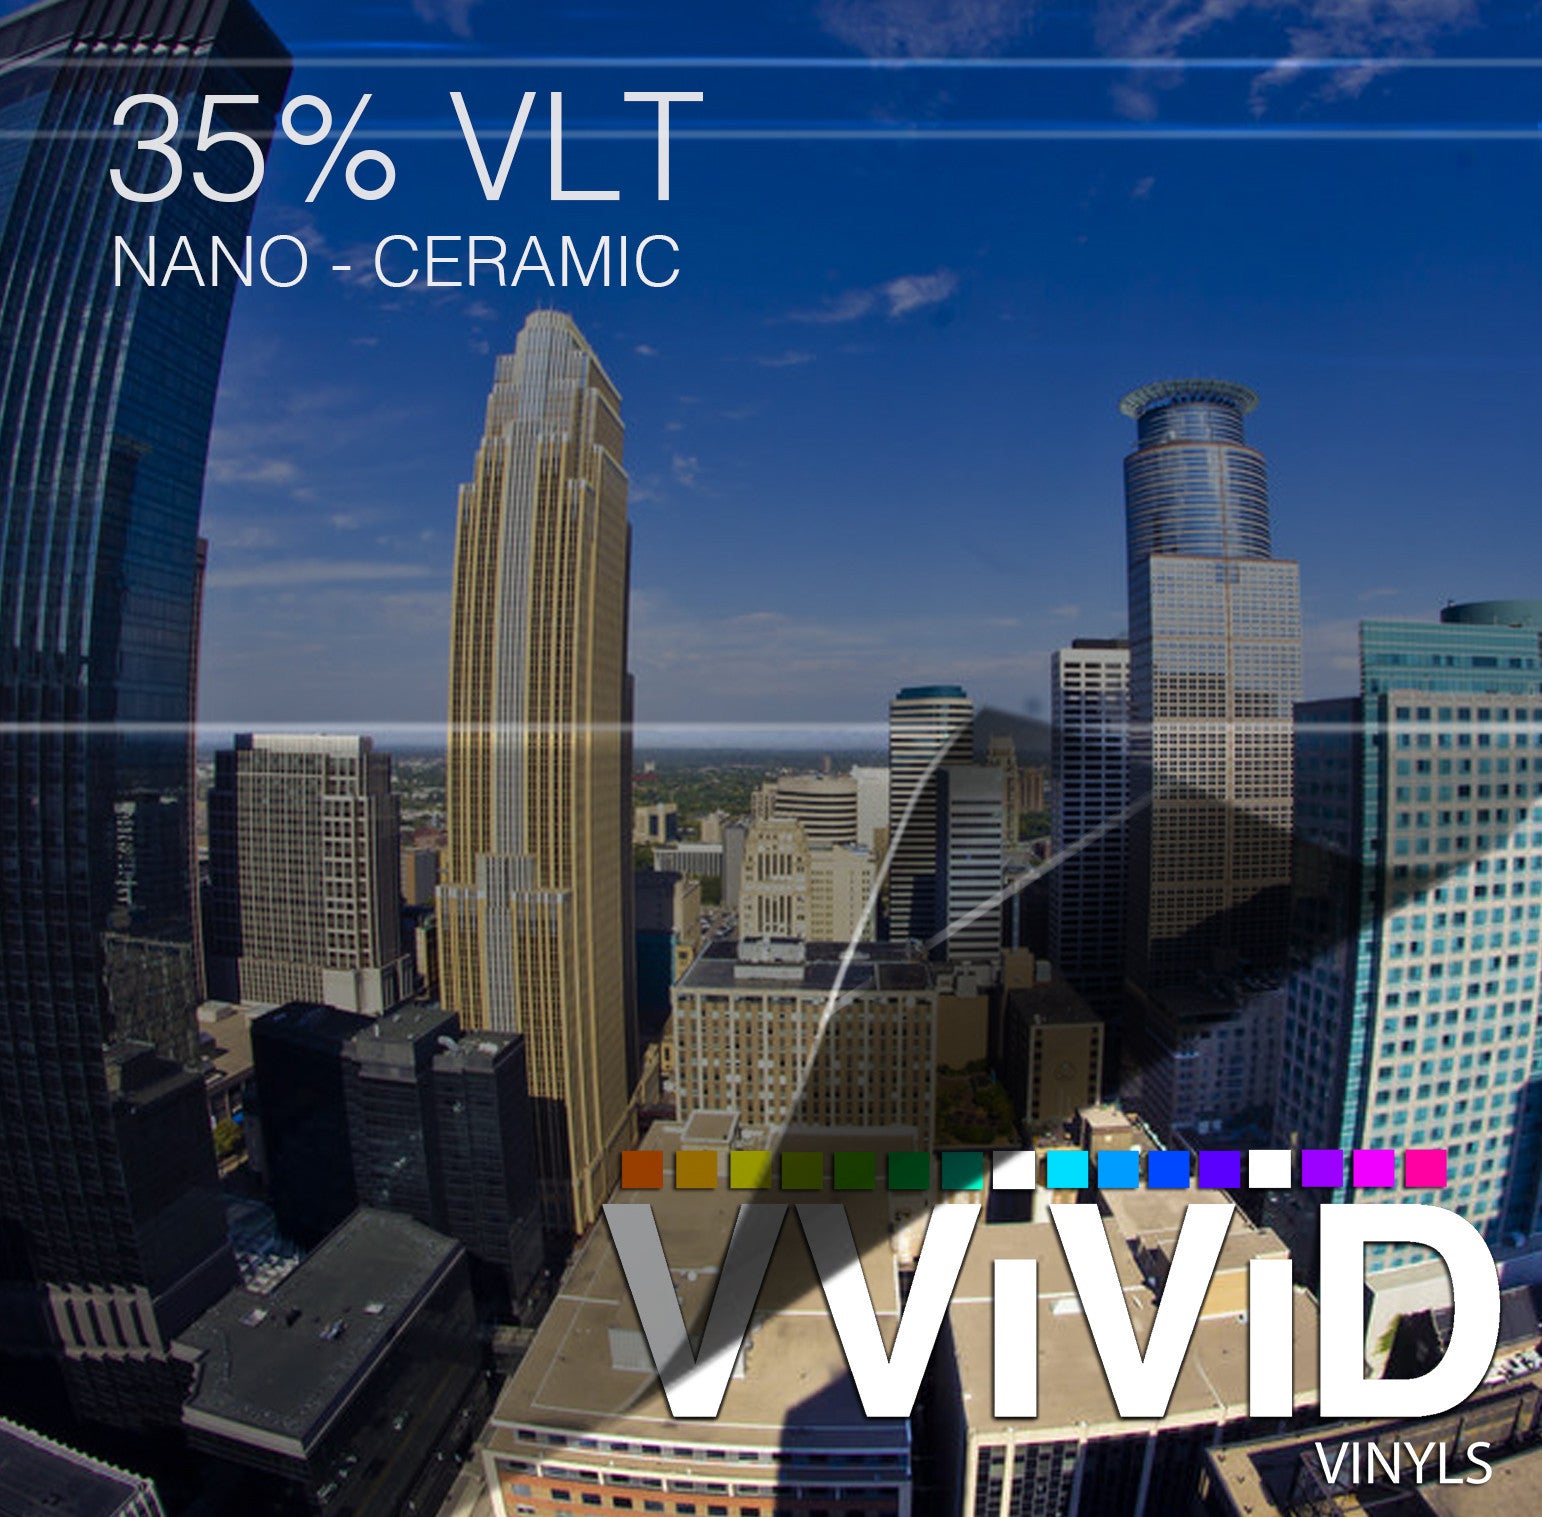 VViViD OPTIC Nano Ceramic Window Tint 35% VLT | Vvivid Canada